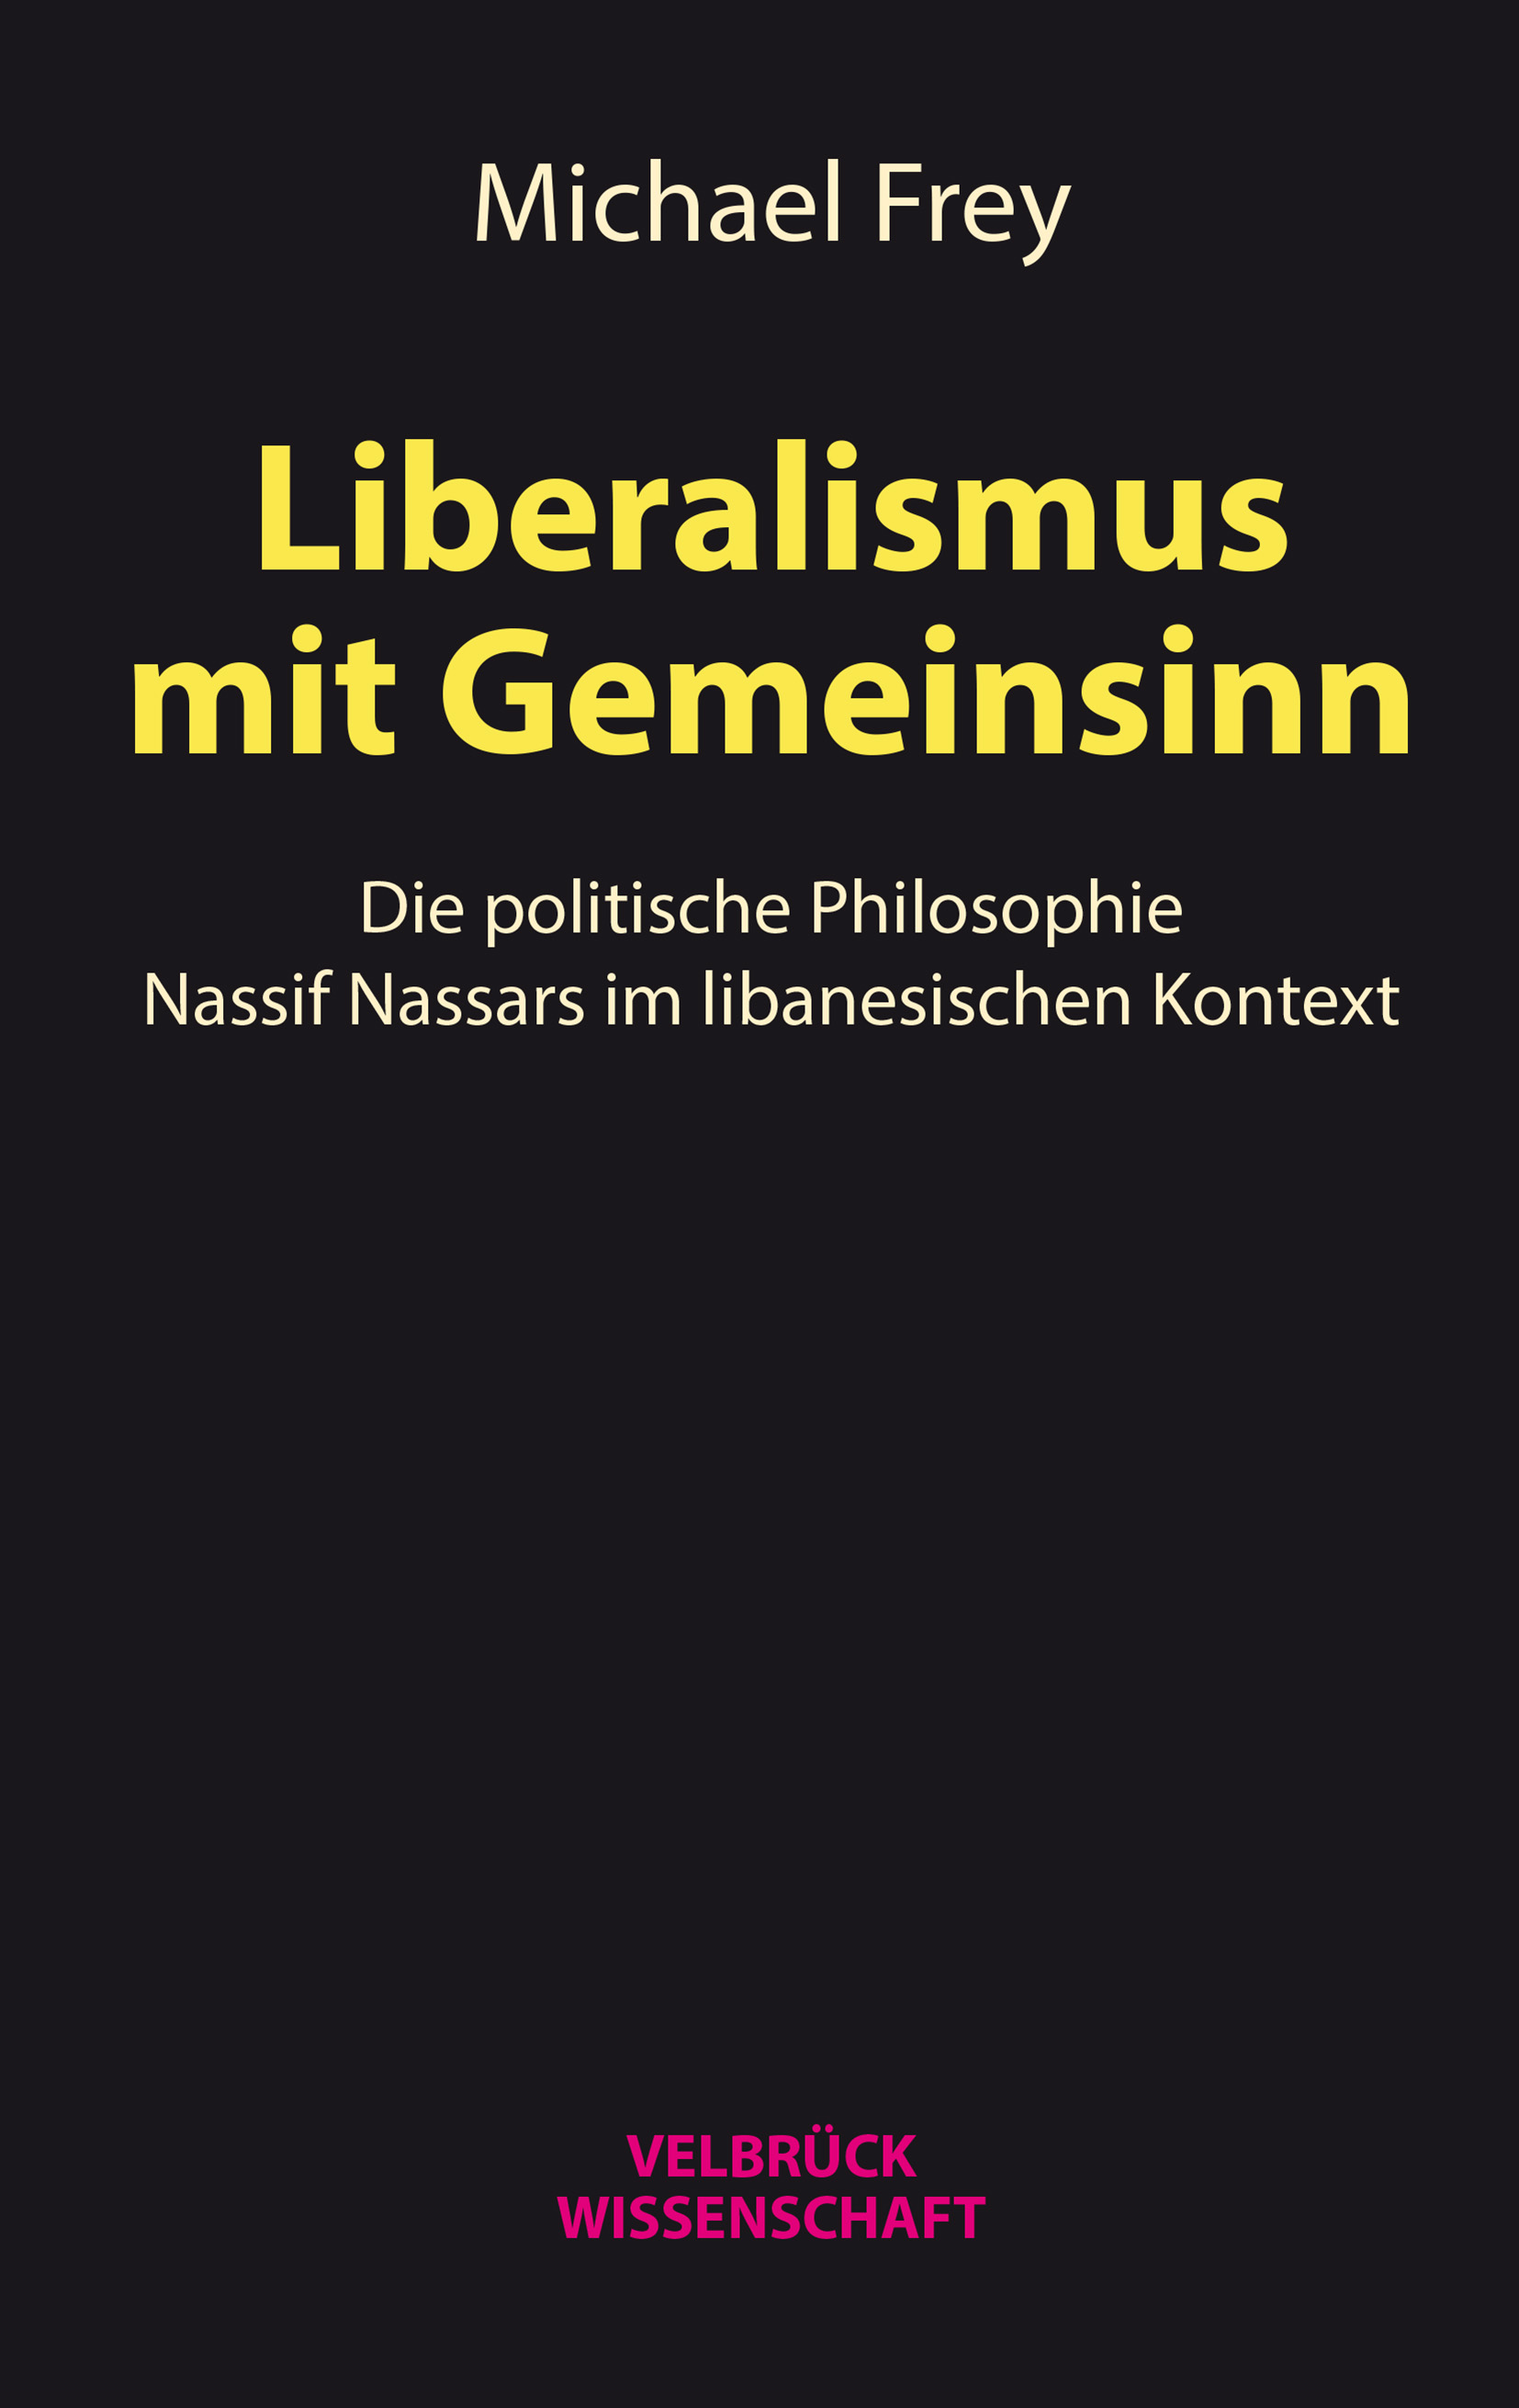 الغلاف الألماني لكتاب ميشائيل فراي: "ليبراليّة تراعي المصلحة العامّة. الفلسفة السياسيّة لناصيف نصّار في السياق اللبناني".  Verlag Velbrück 